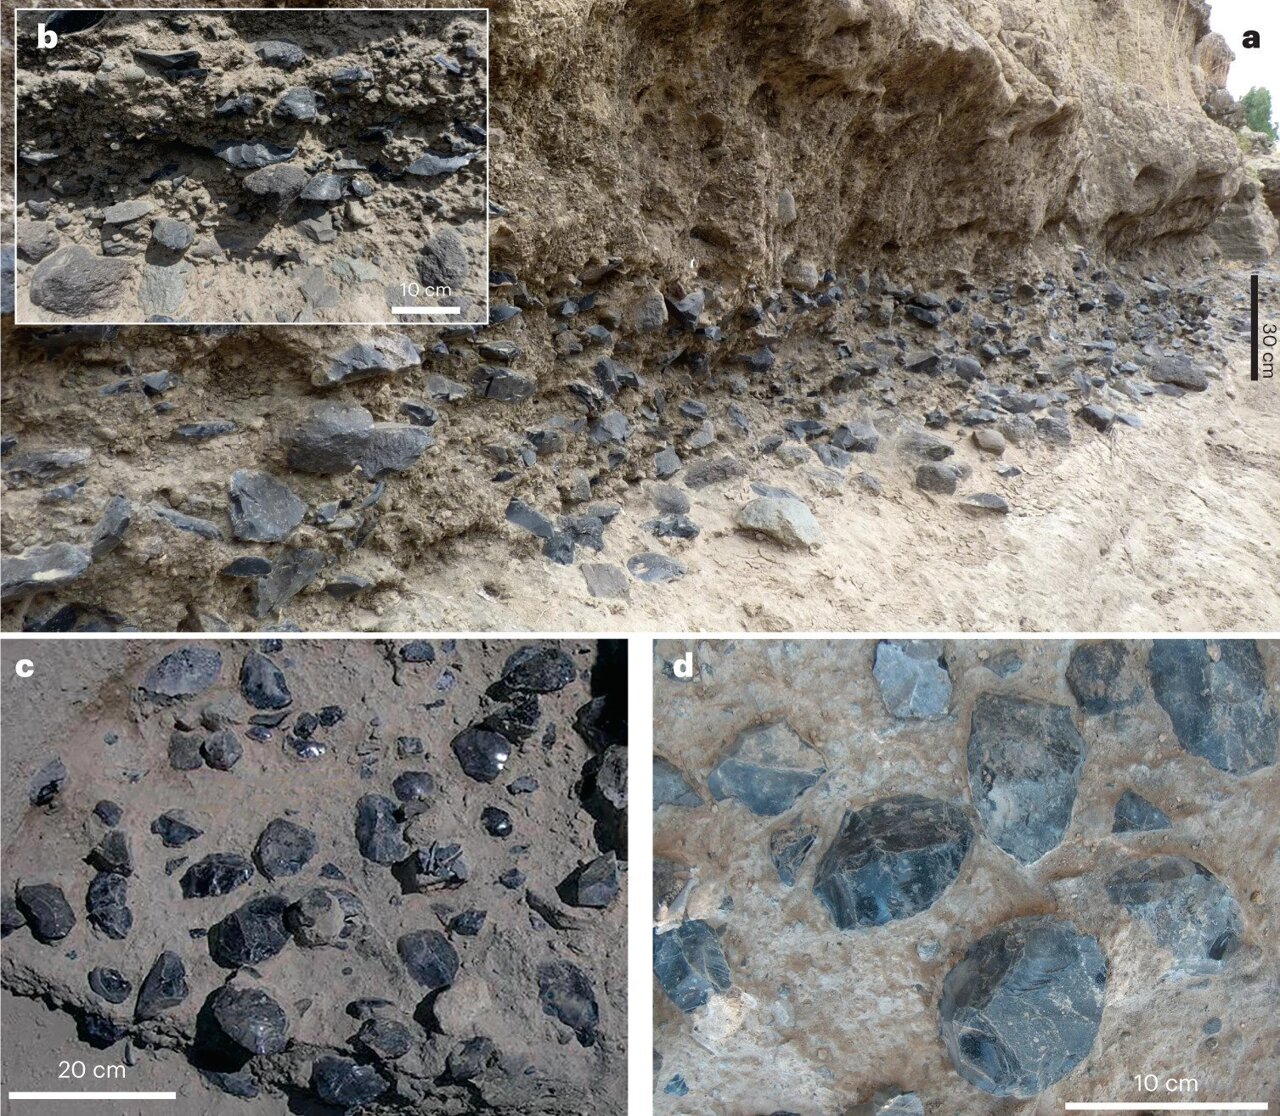 Akumulimet e gjera të artefakteve të obsidianit në nivelin C. a,b, Pamje e përgjithshme e nivelit dhe detajeve të densitetit të artefakteve përgjatë shkëmbit MS (a) dhe pjesës (b). c,d, Pamje e përgjithshme (c) dhe detaje (d) e përqendrimit të artefaktit (kryesisht akset) në gropën e provës të vitit 2004.